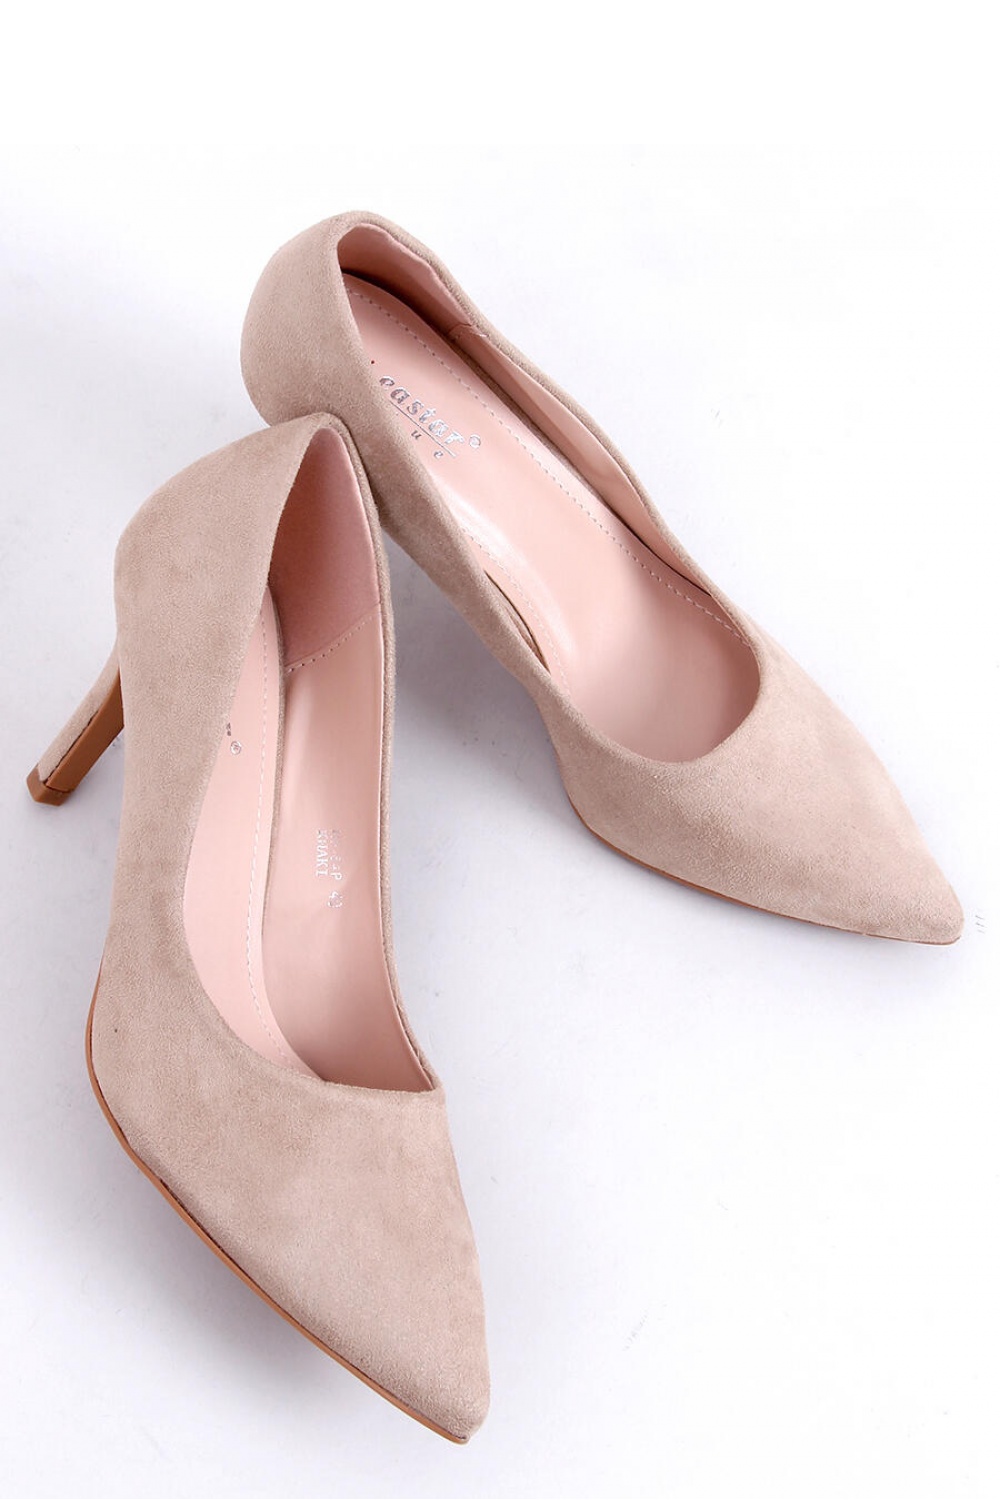  High heels model 172831 Inello  beige